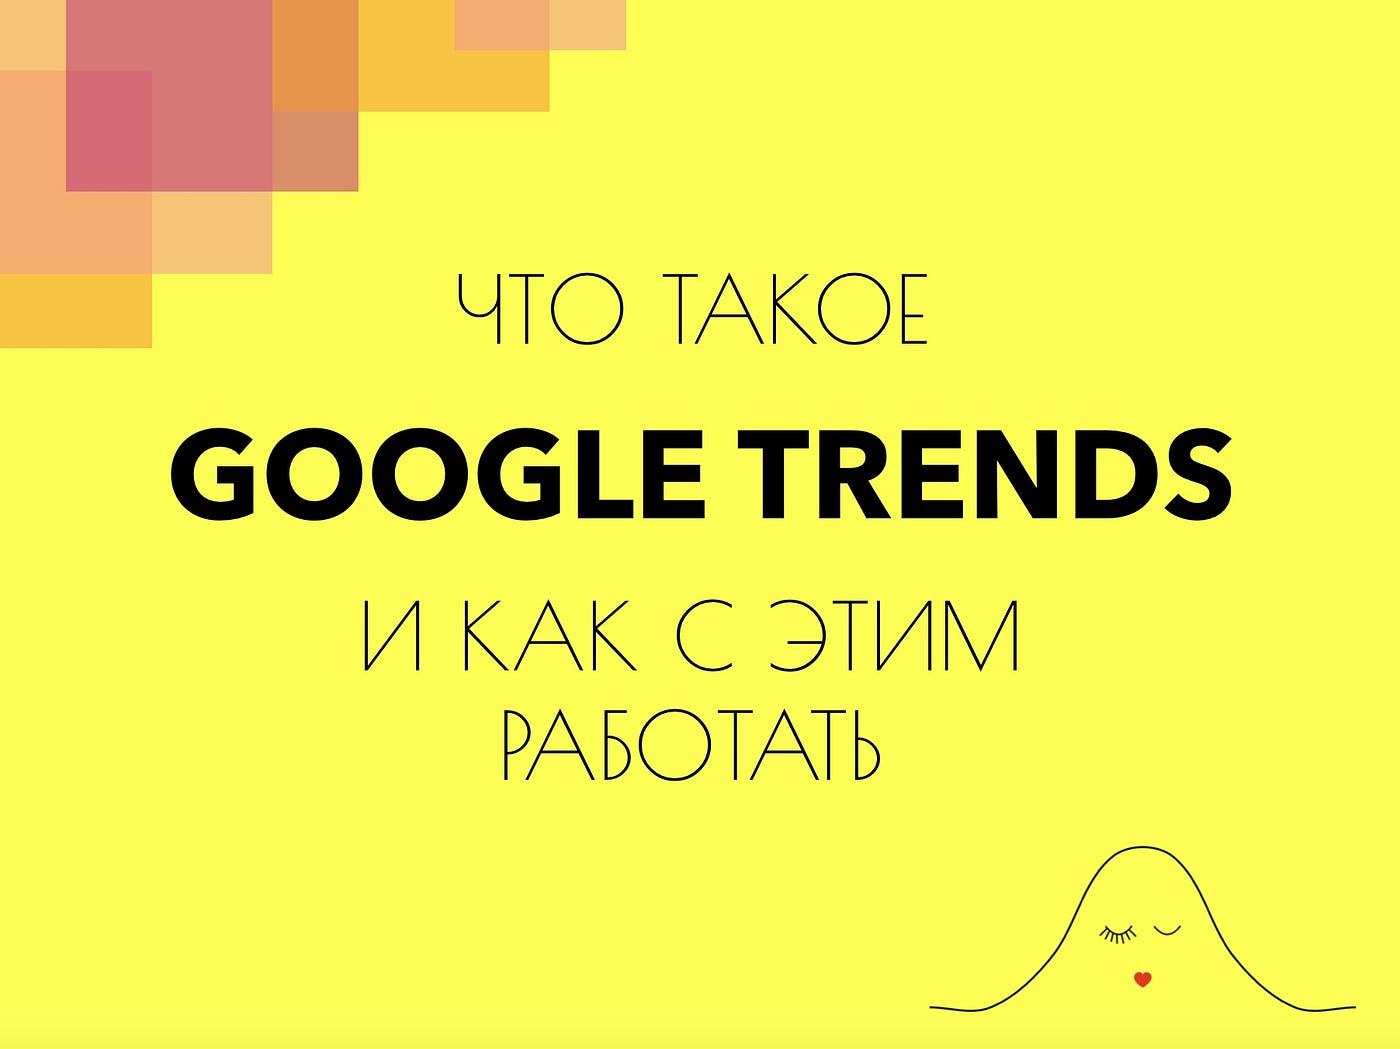 Google trends para que sirve